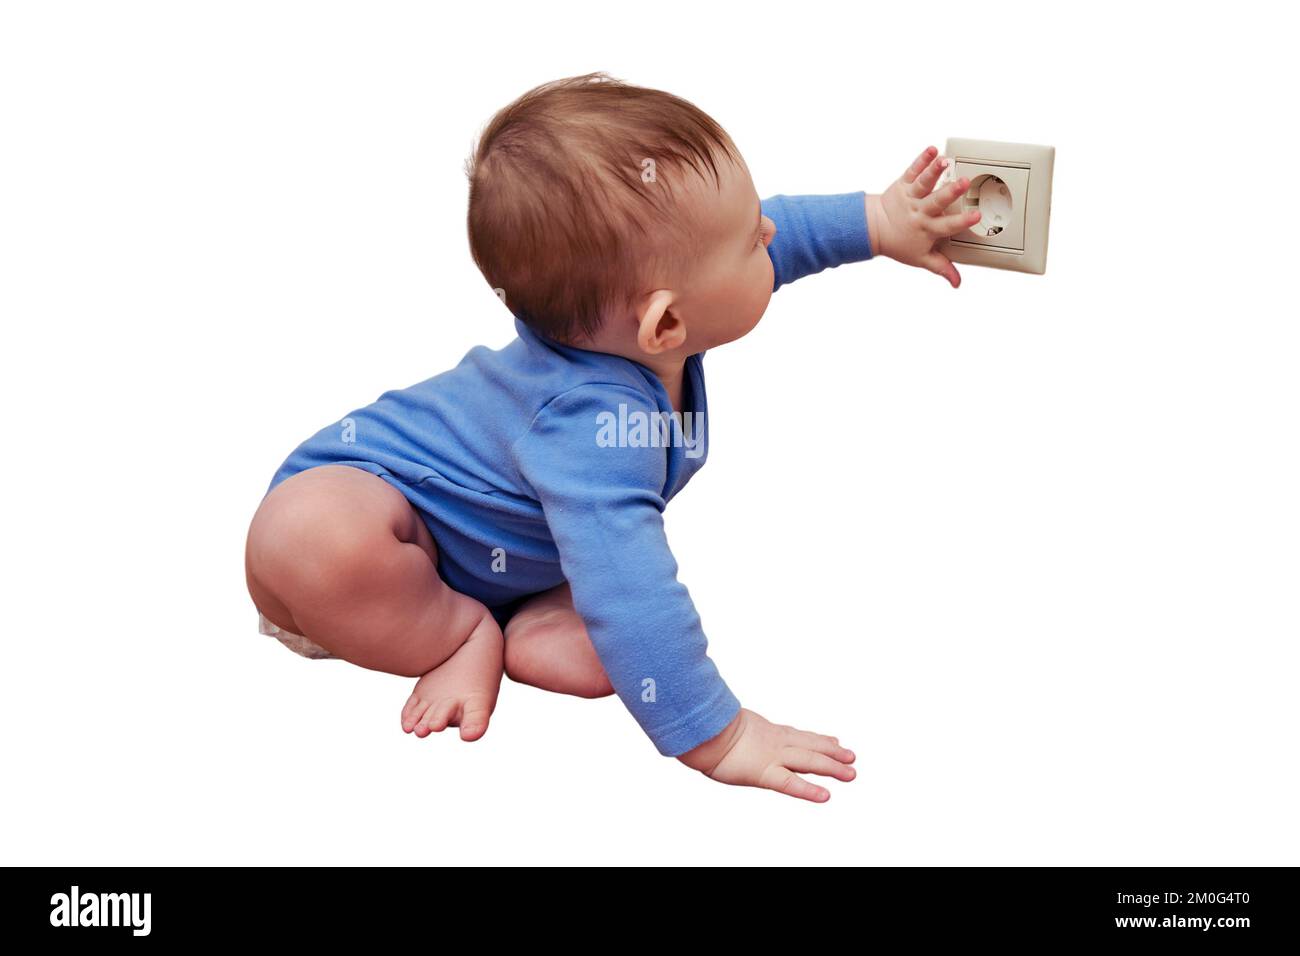 Das Baby greift mit seiner Hand in die Steckdose an der Wand, isoliert auf weißem Hintergrund. Gefahr und Schutz von Kinderfingern Stockfoto